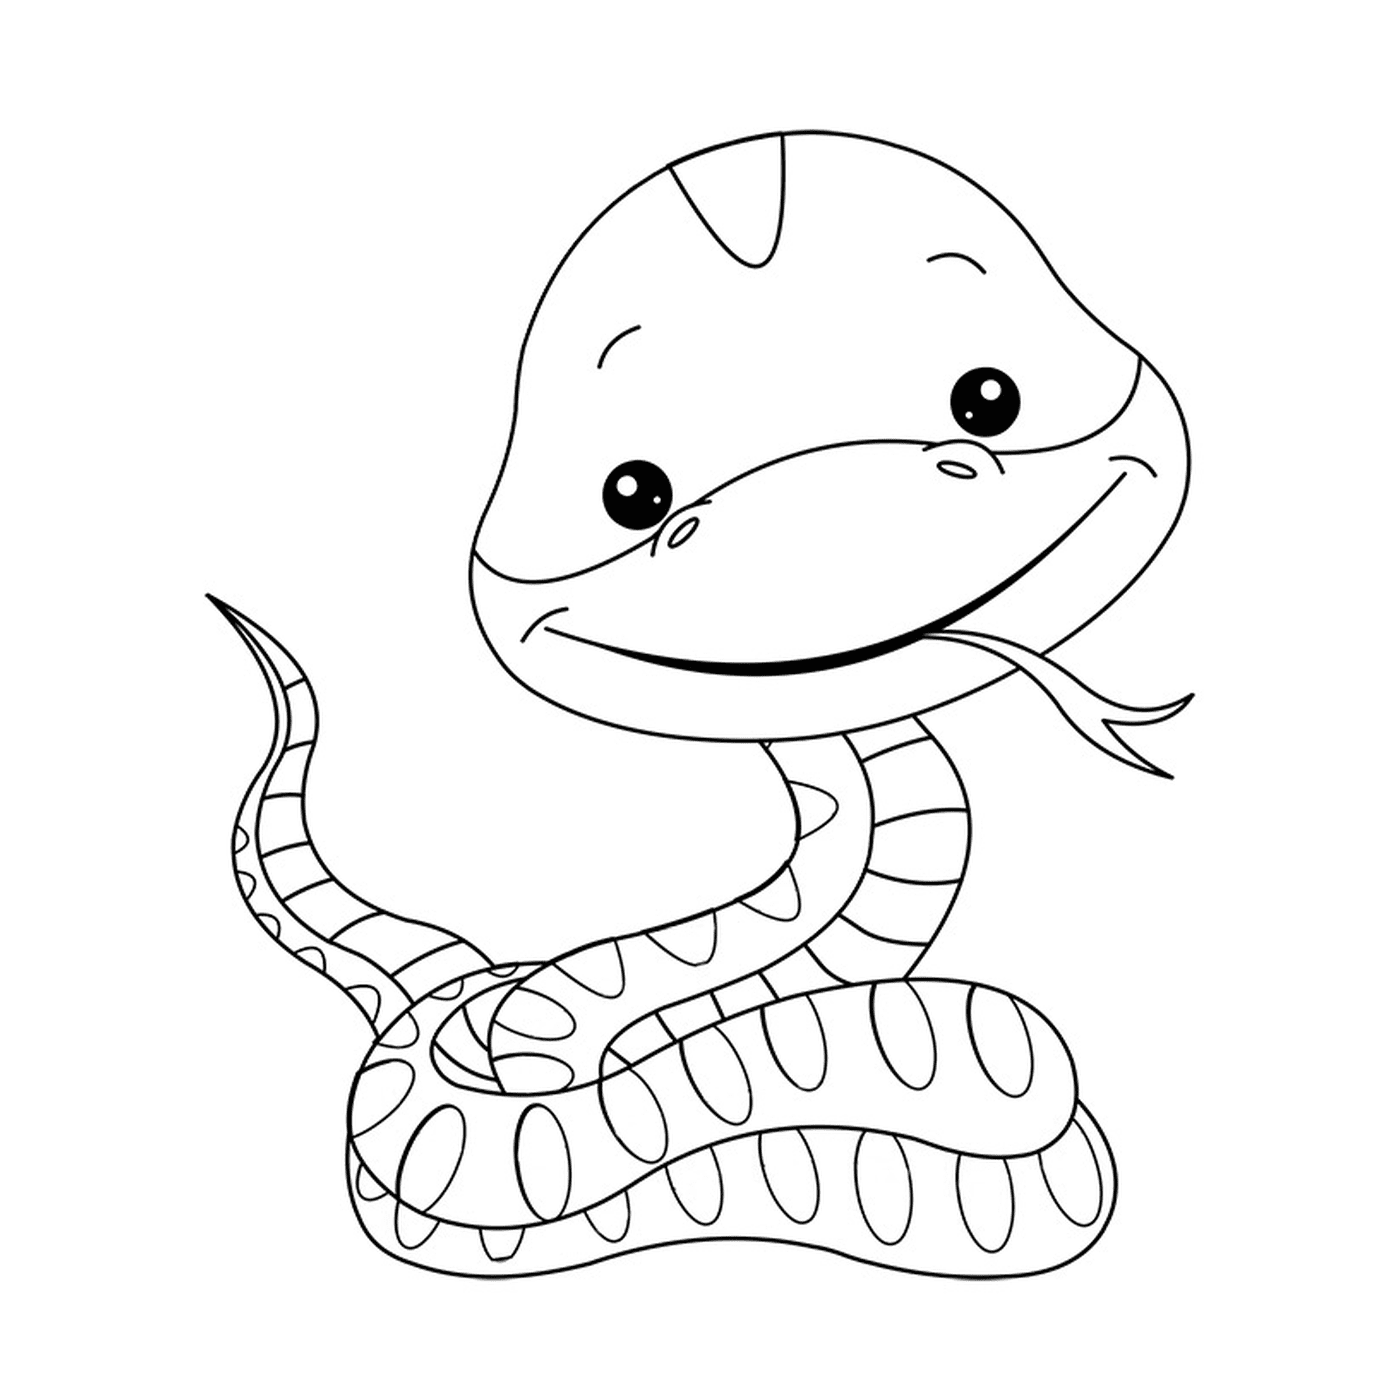  Невинная новорожденная змея 